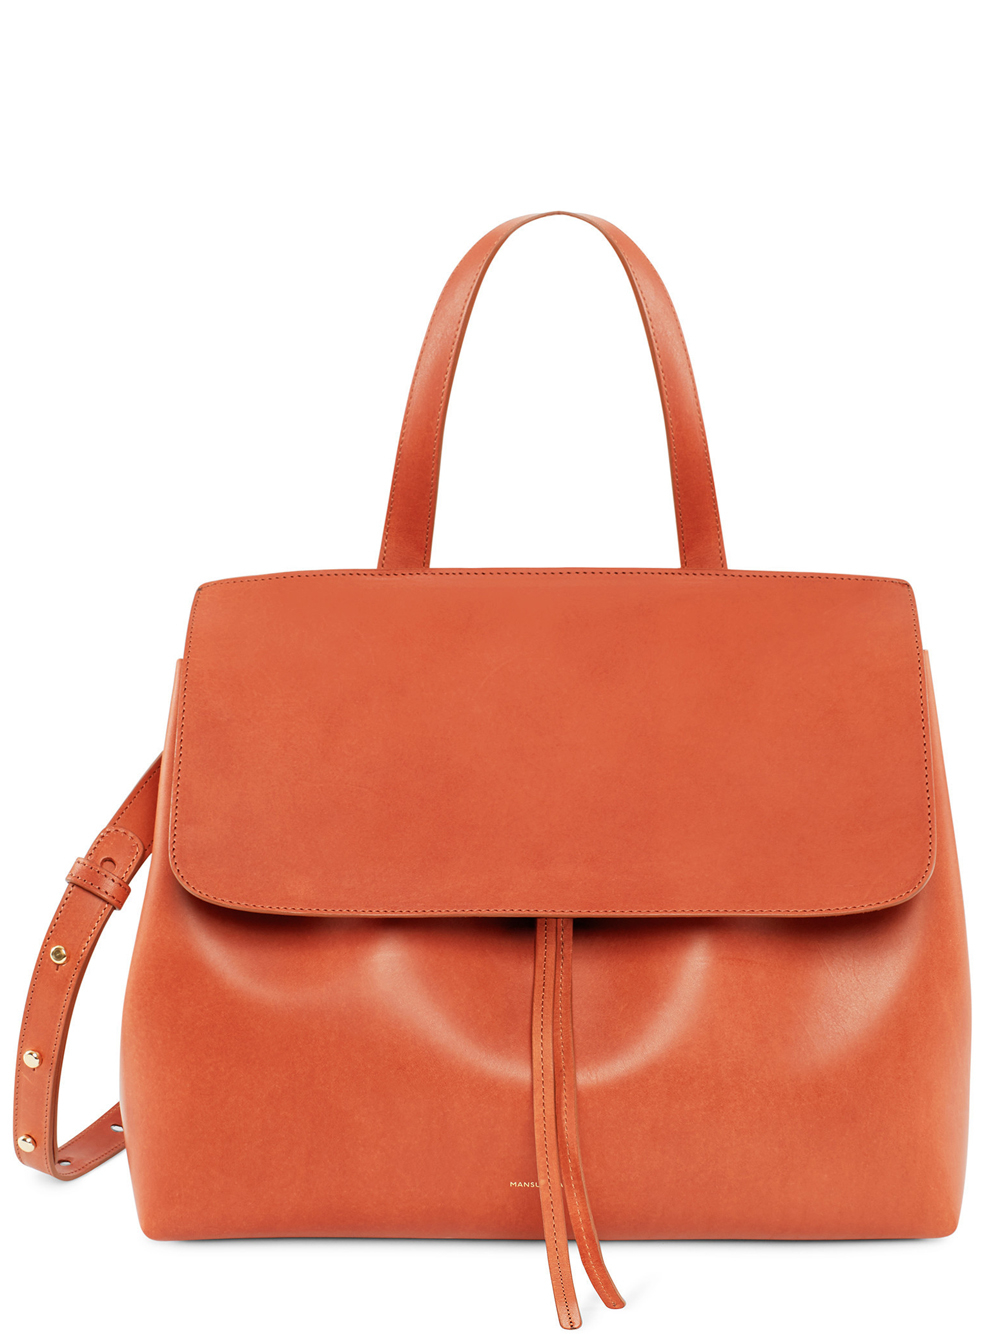 Lyst - Mansur gavriel Lady Leather Shoulder Bag in Orange